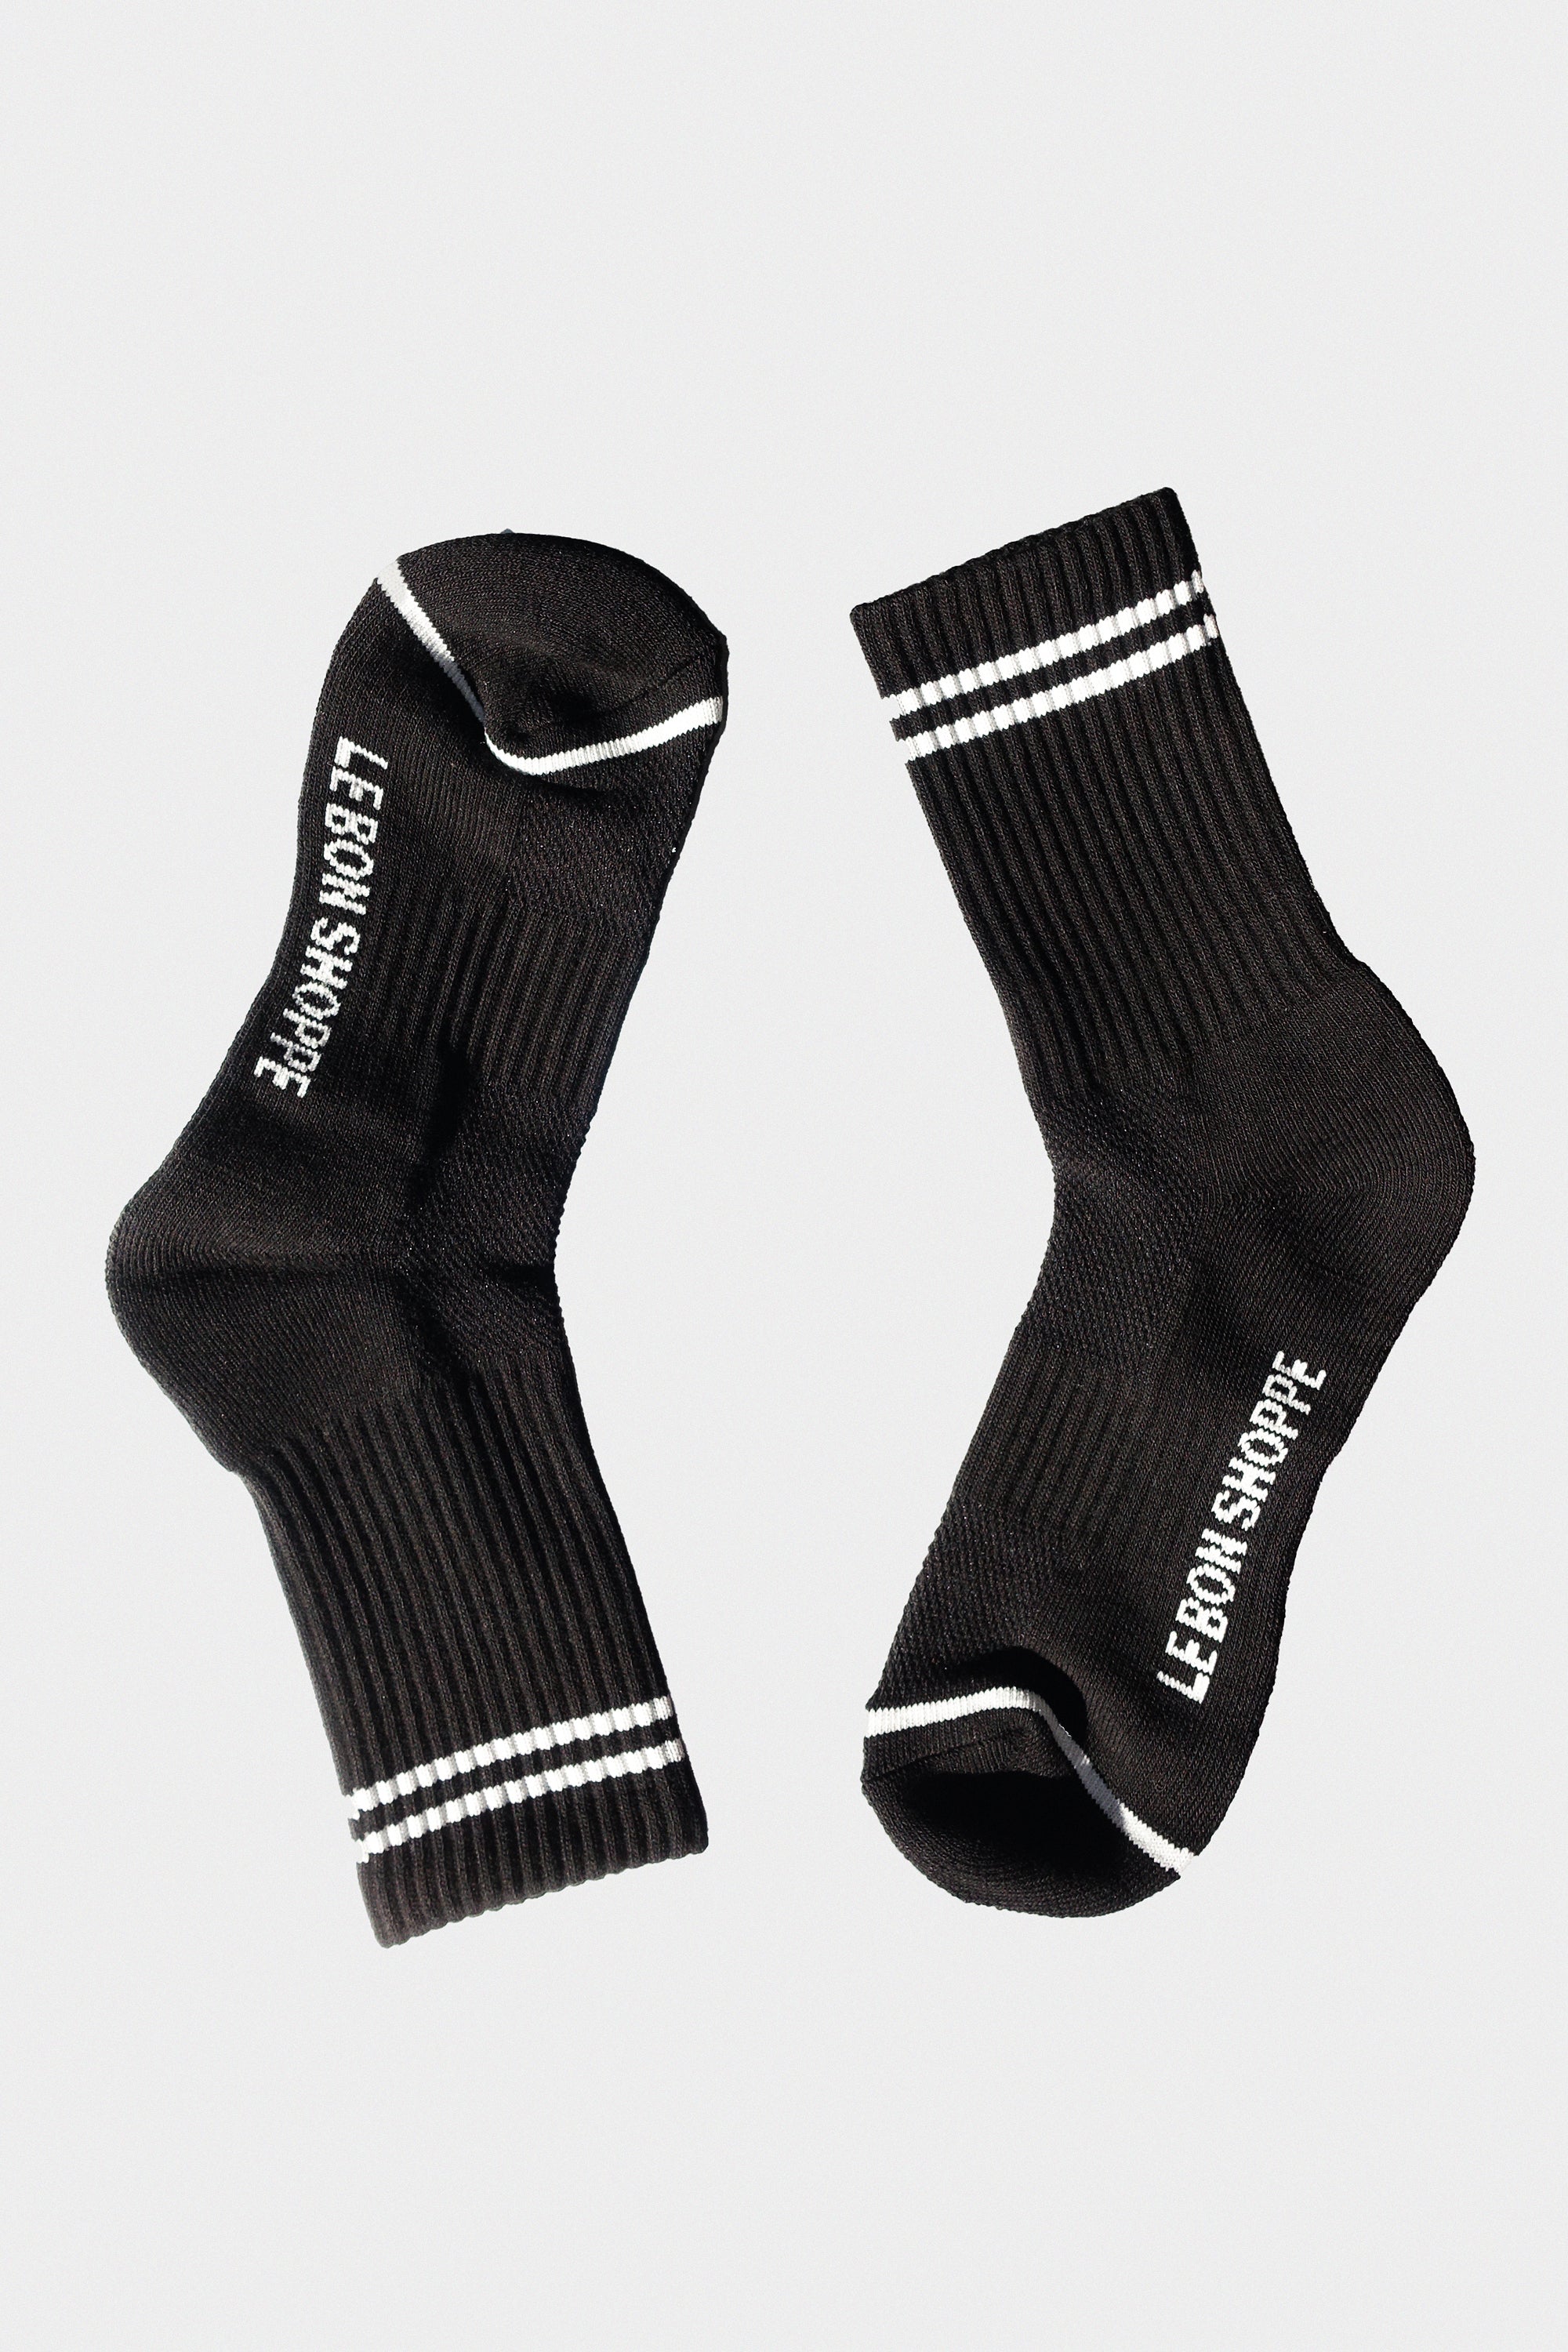 Boyfriend Socks in Noir by Le Bon Shoppe